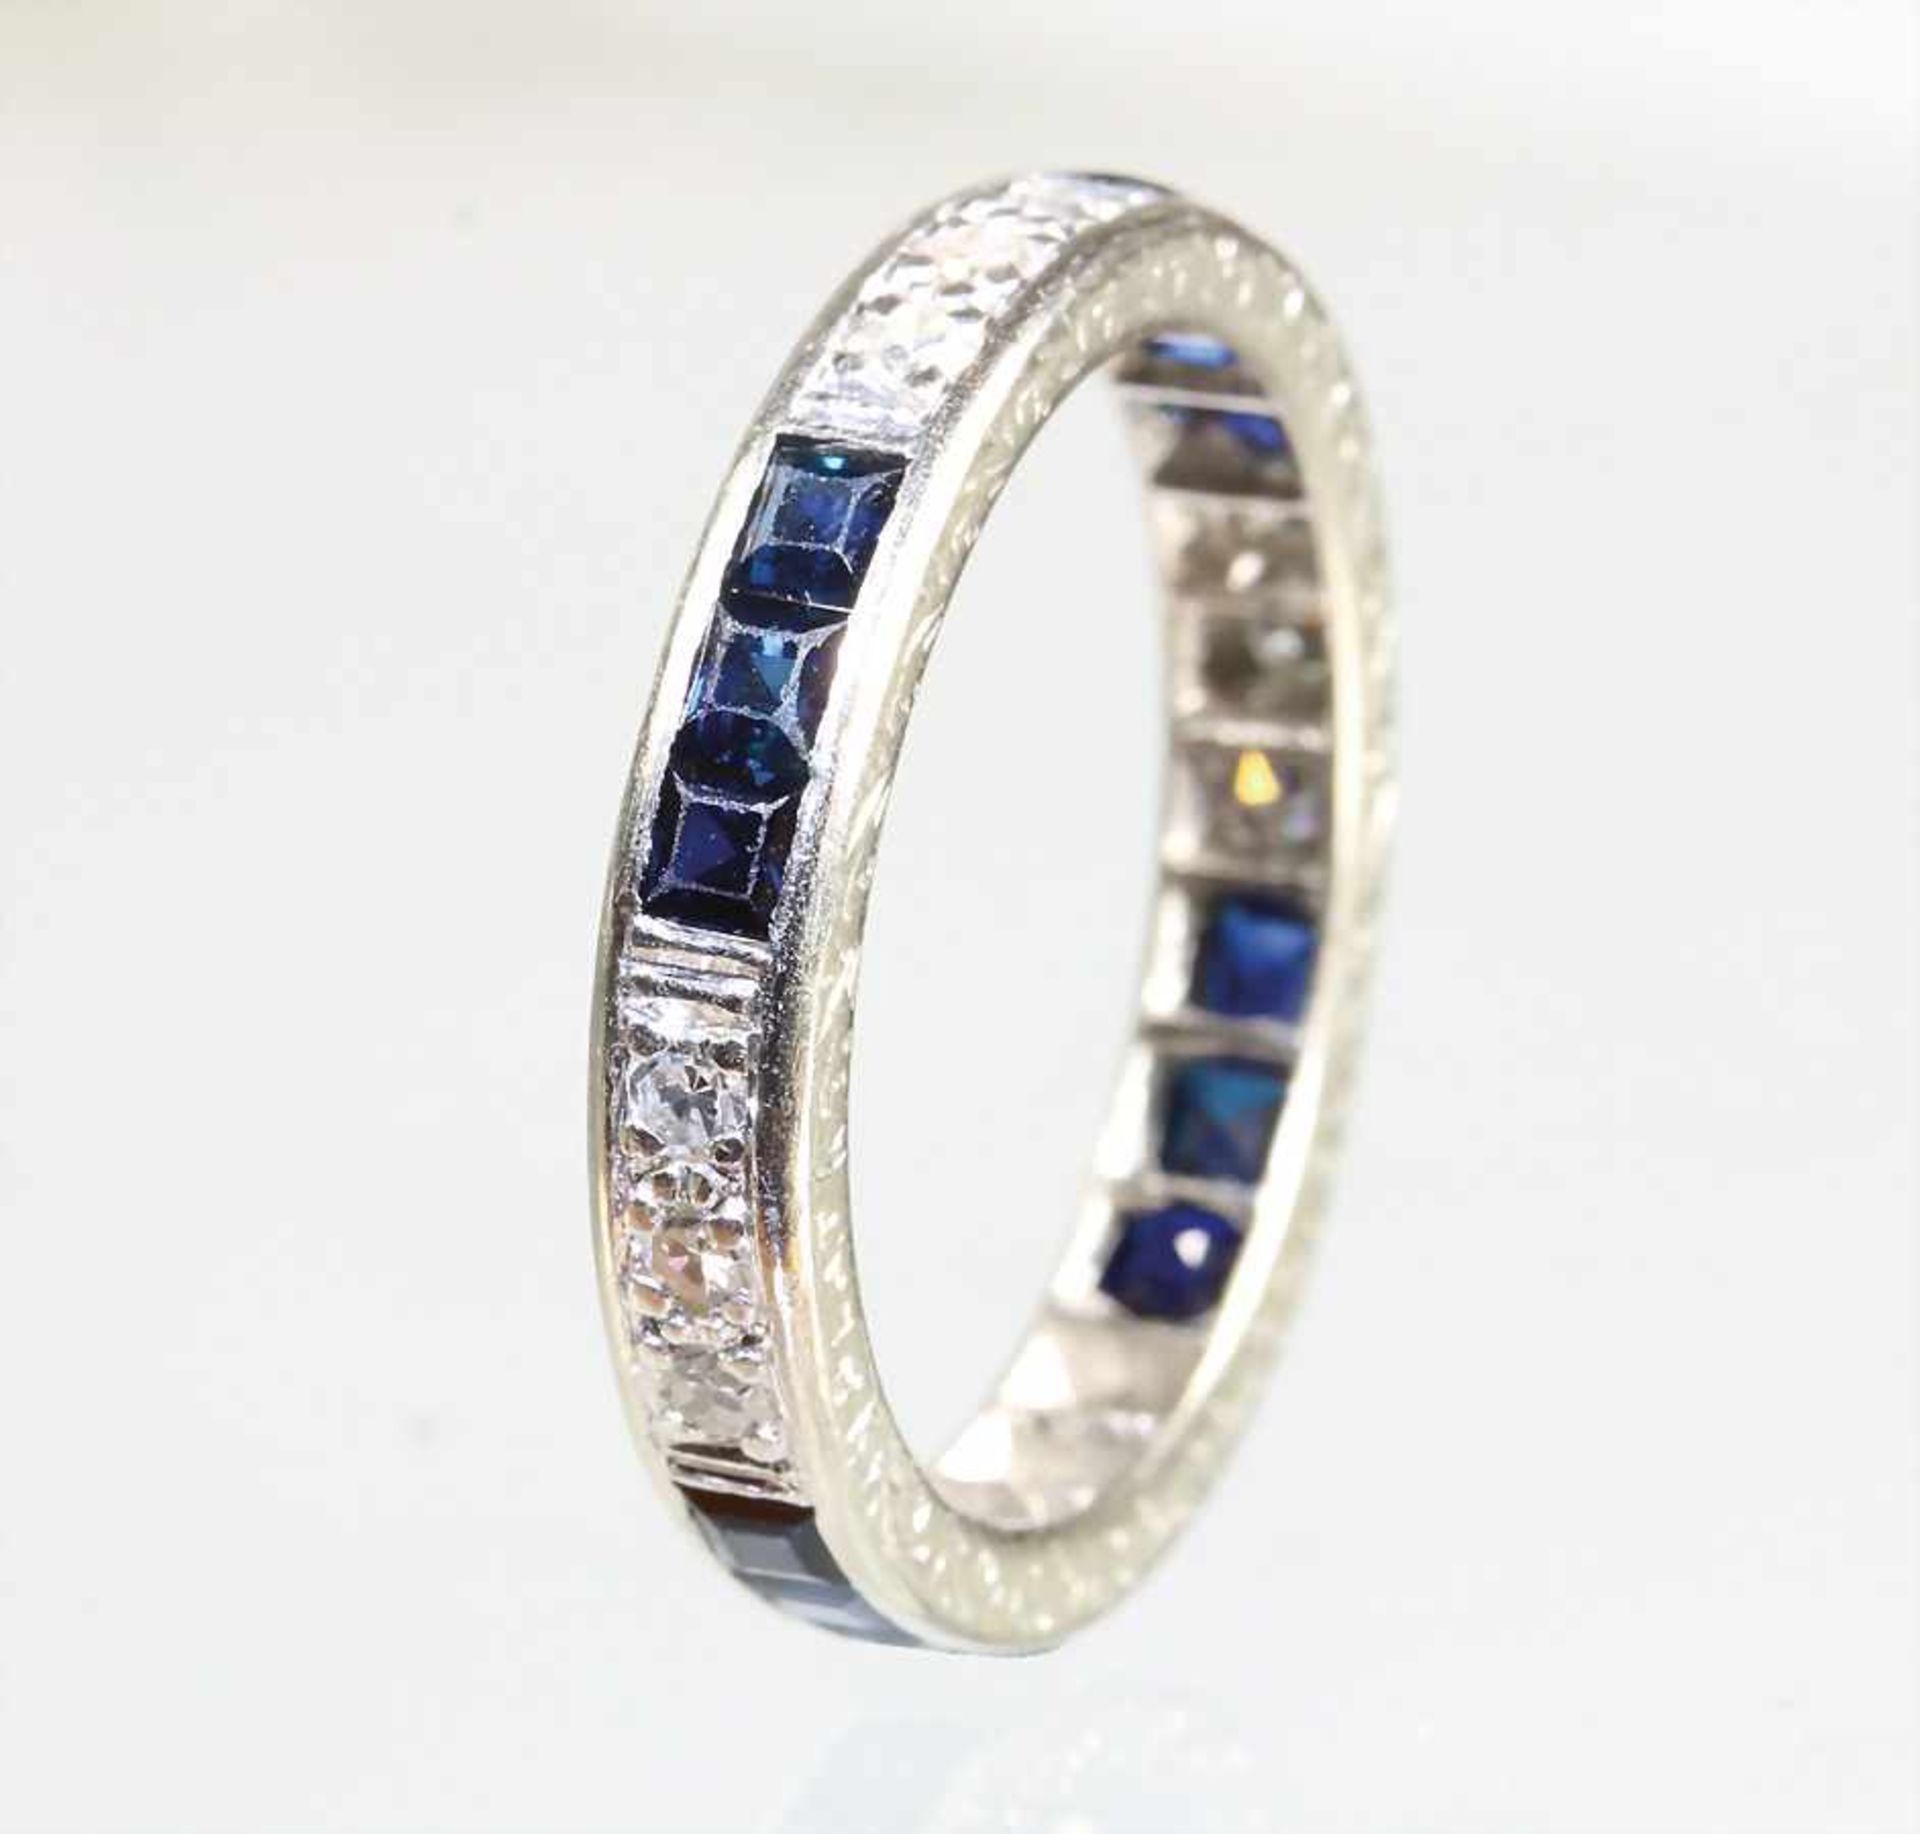 Ring "MEMOIRE", Platin (geprüft), 12 St. 8/8 Diamanten ca. 0,25 ct weiß, 12 Saphire im Carré-Schliff - Bild 2 aus 2